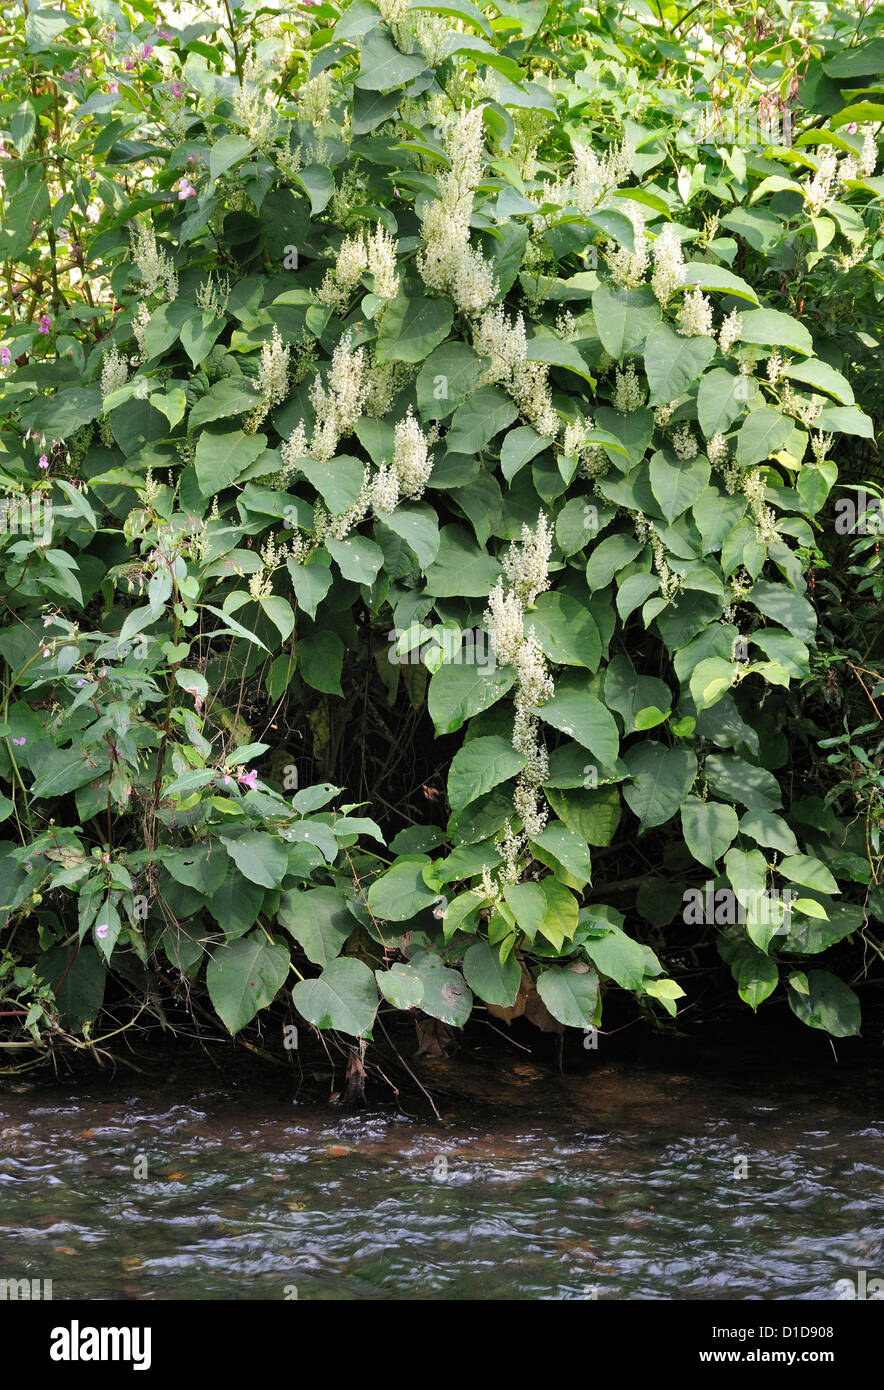 La renouée du Japon Fallopia japonica - Espèces exotiques envahissantes de plantes riveraines par la rivière Usk, Pays de Galles Banque D'Images